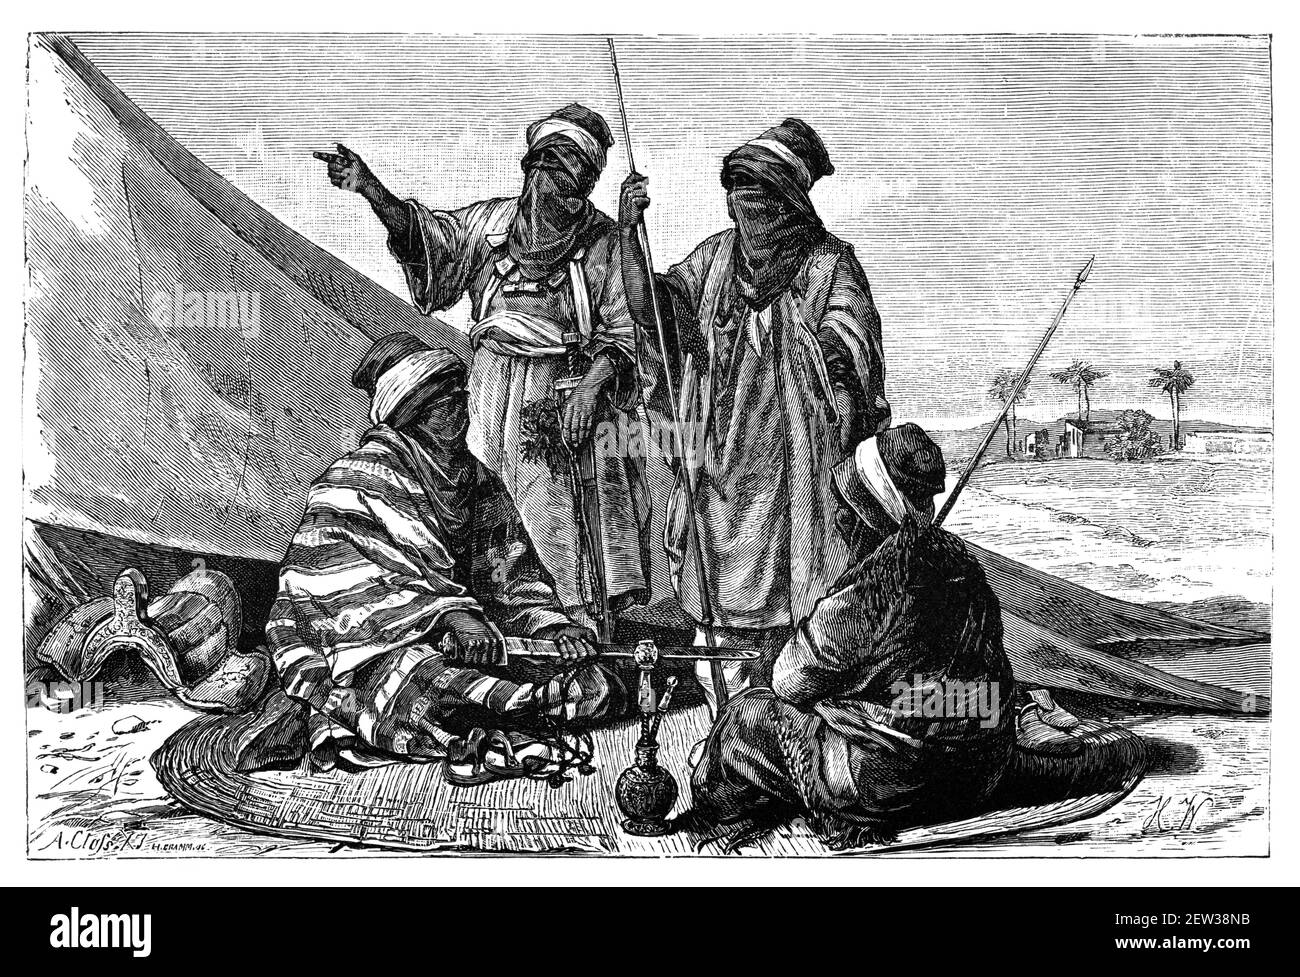 Armato Berbero Tuareg Men.Culture e storia del Nord Africa. Immagine in bianco e nero d'epoca. 19 ° secolo. Foto Stock